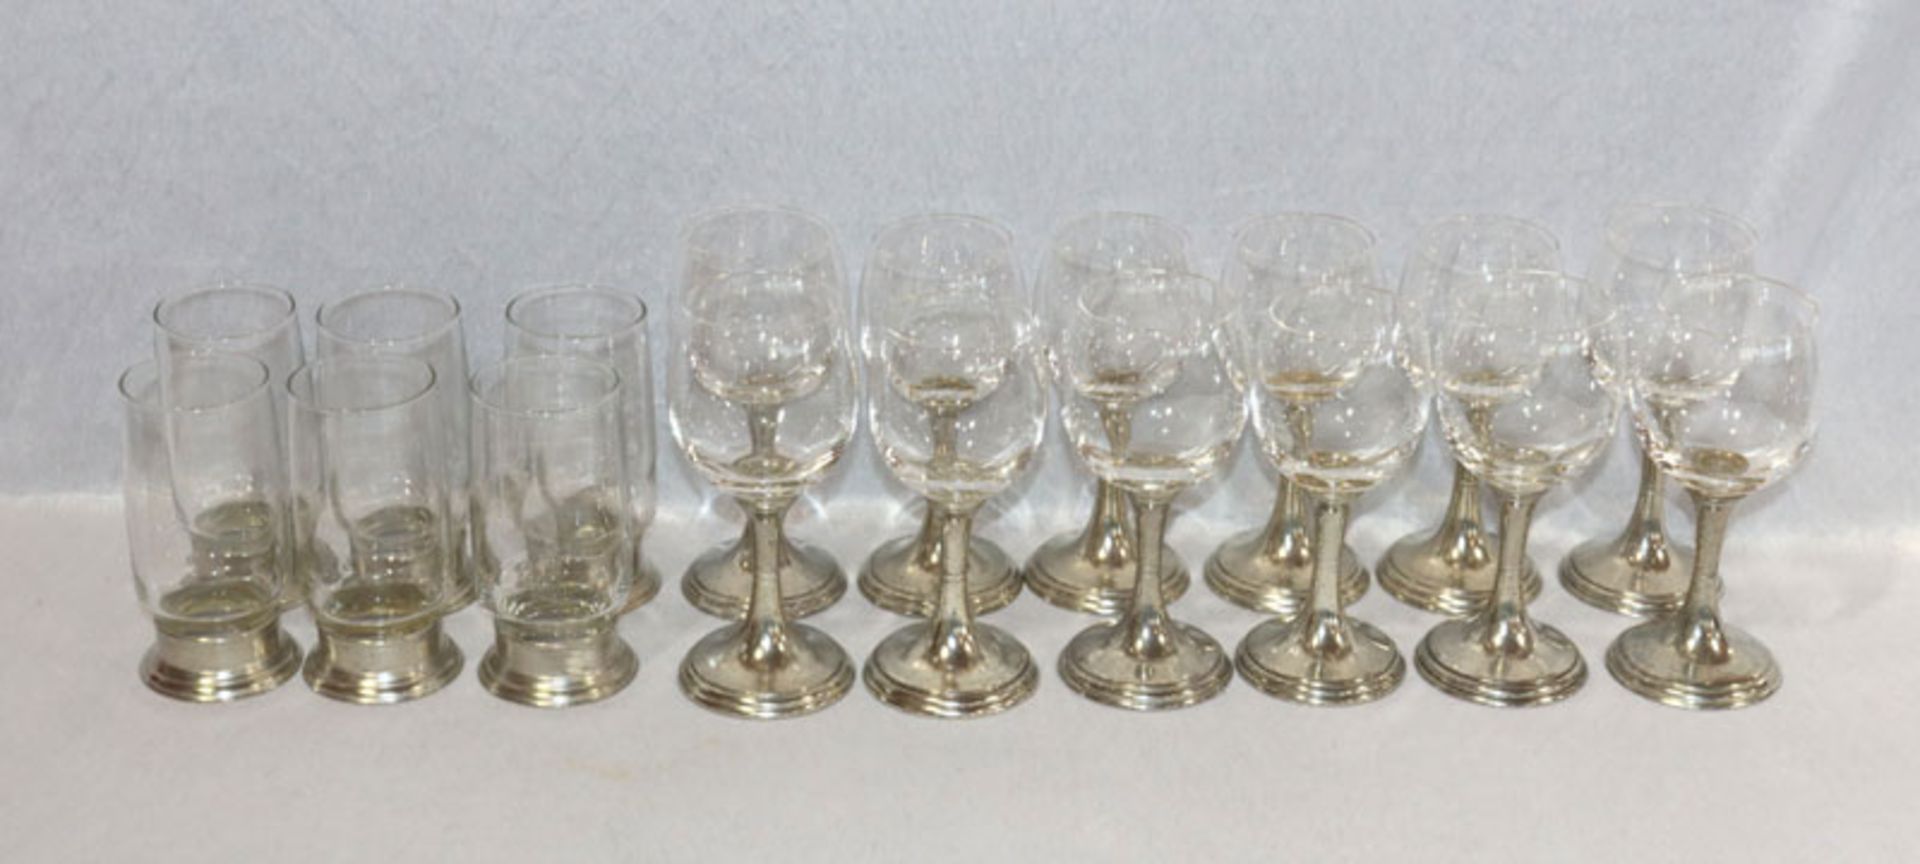 Trinkglas-Konvolut 6 Weißwein- und 6 Rotweingläser und 6 Becher, alle mit Zinnfuß, H 17/14 cm,